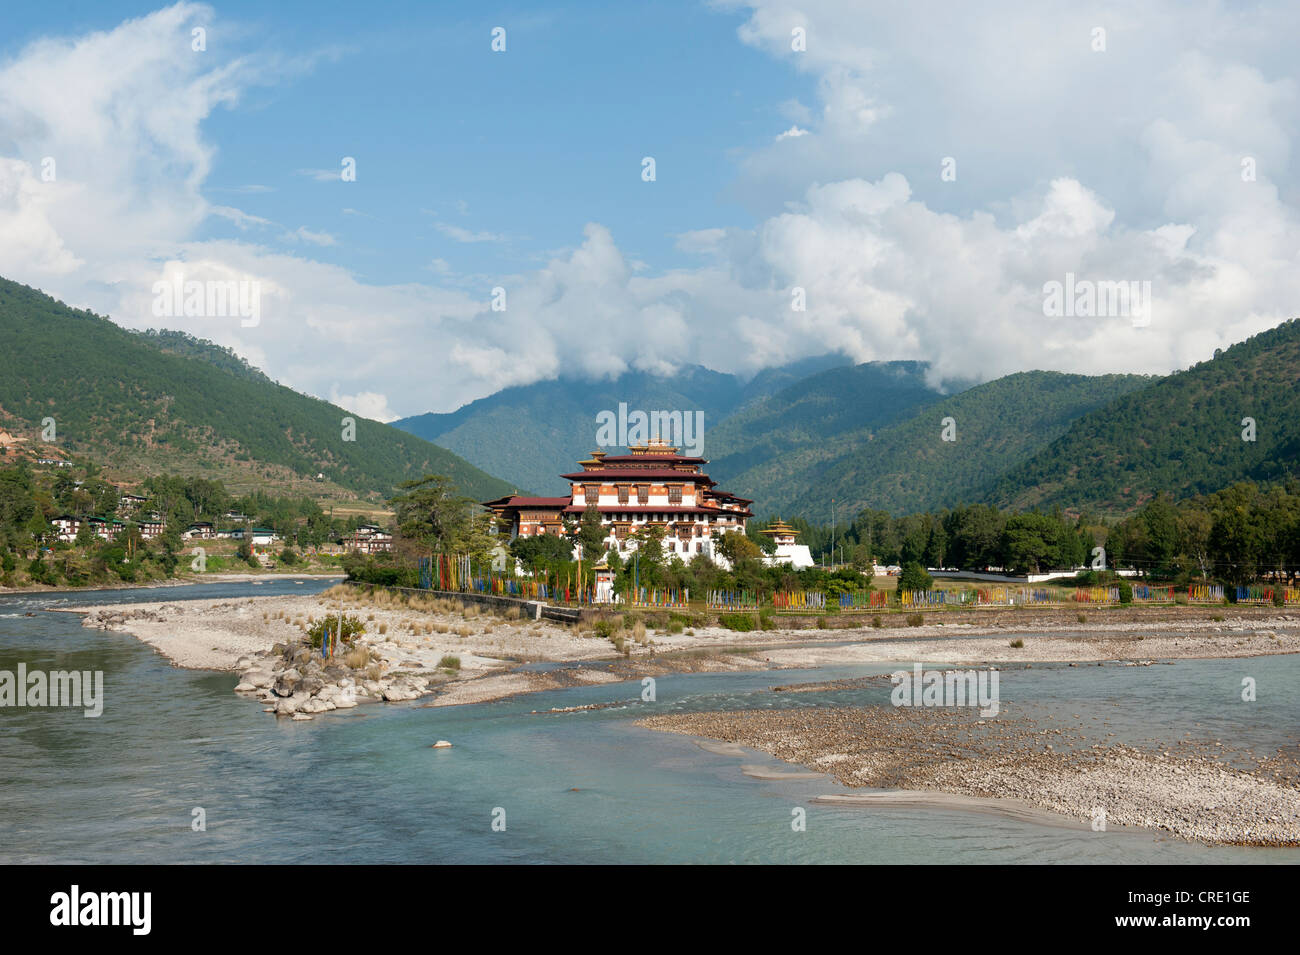 Le bouddhisme tibétain, fortess-monastère par la rivière, Dzong, montagnes boisées, Punakha, l'Himalaya, Royaume du Bhoutan Banque D'Images